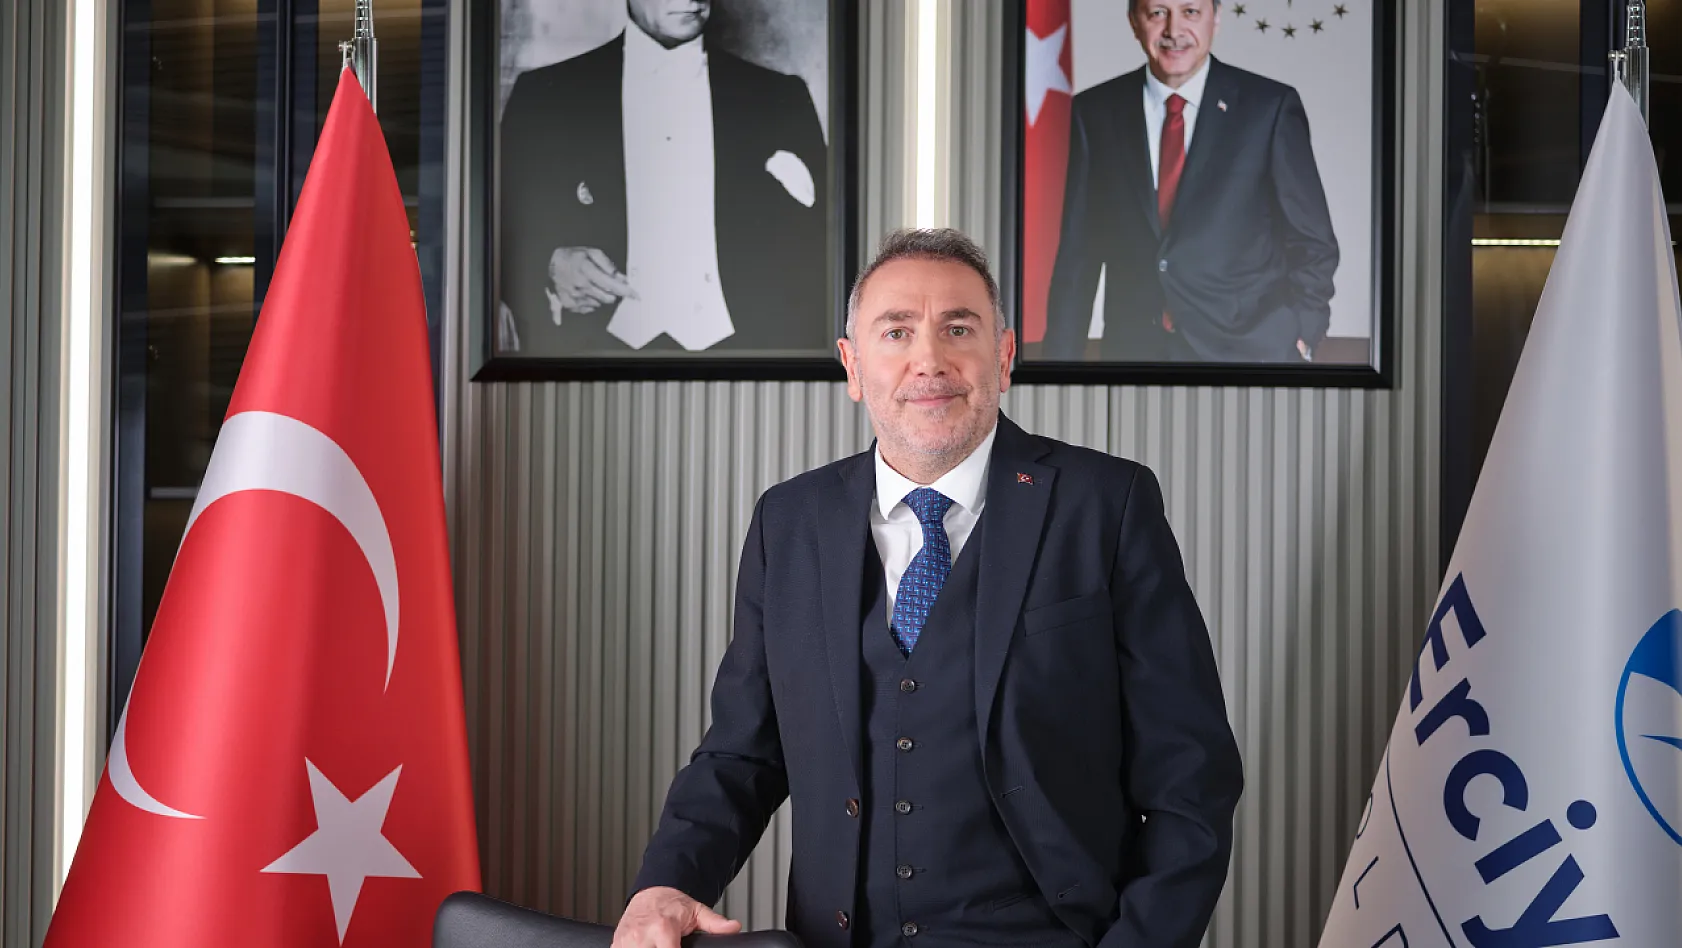 Flaş gelişme! Erciyes Anadolu Holdingin satışıyla ilgili açıklama geldi!